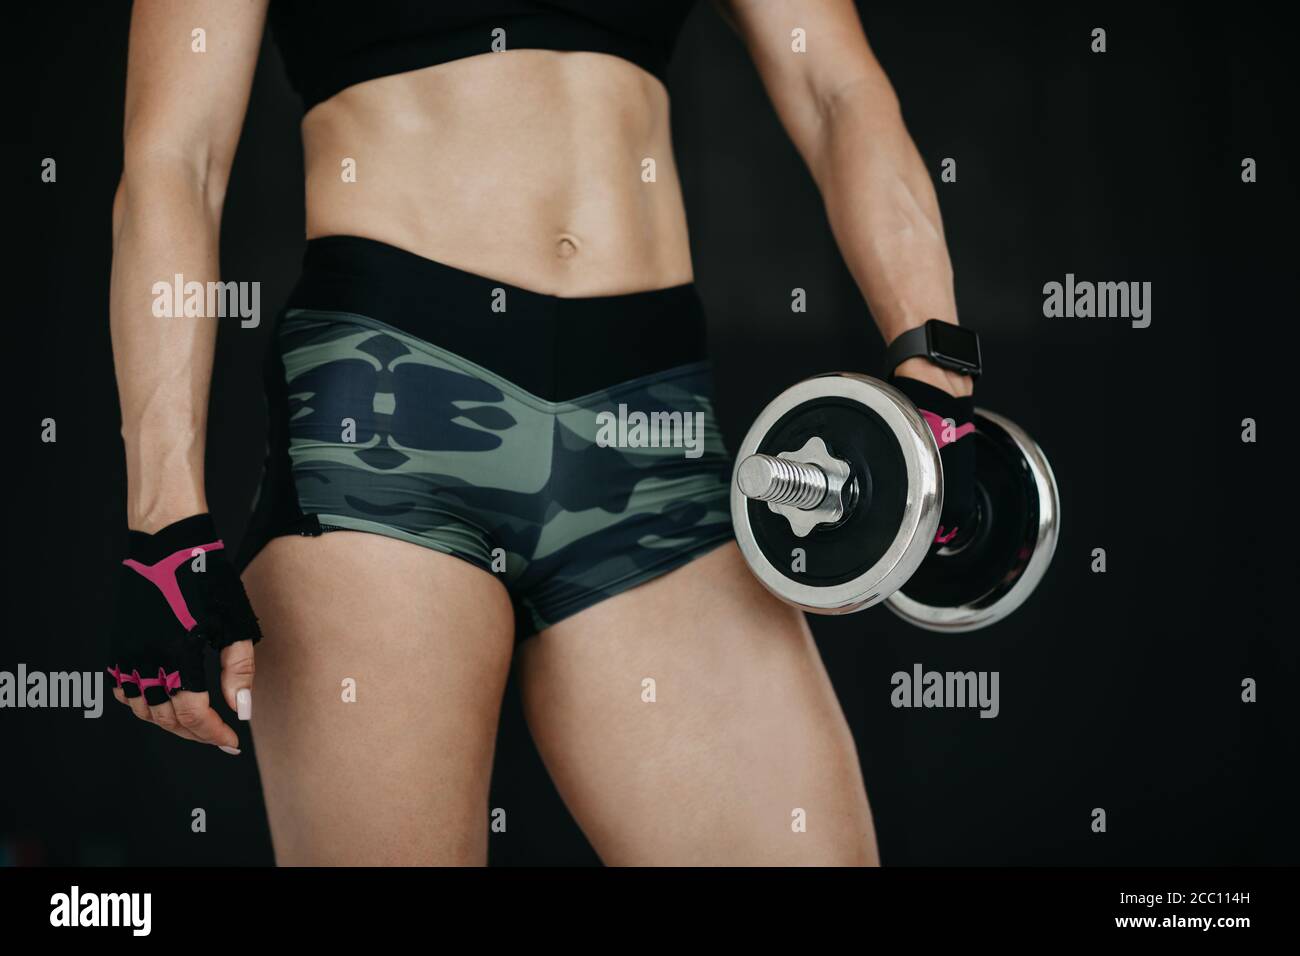 Schlank muskulösen Bauch Fitness-Modell. Sportliche junge Frau macht Fitness-Training mit Hanteln Stockfoto